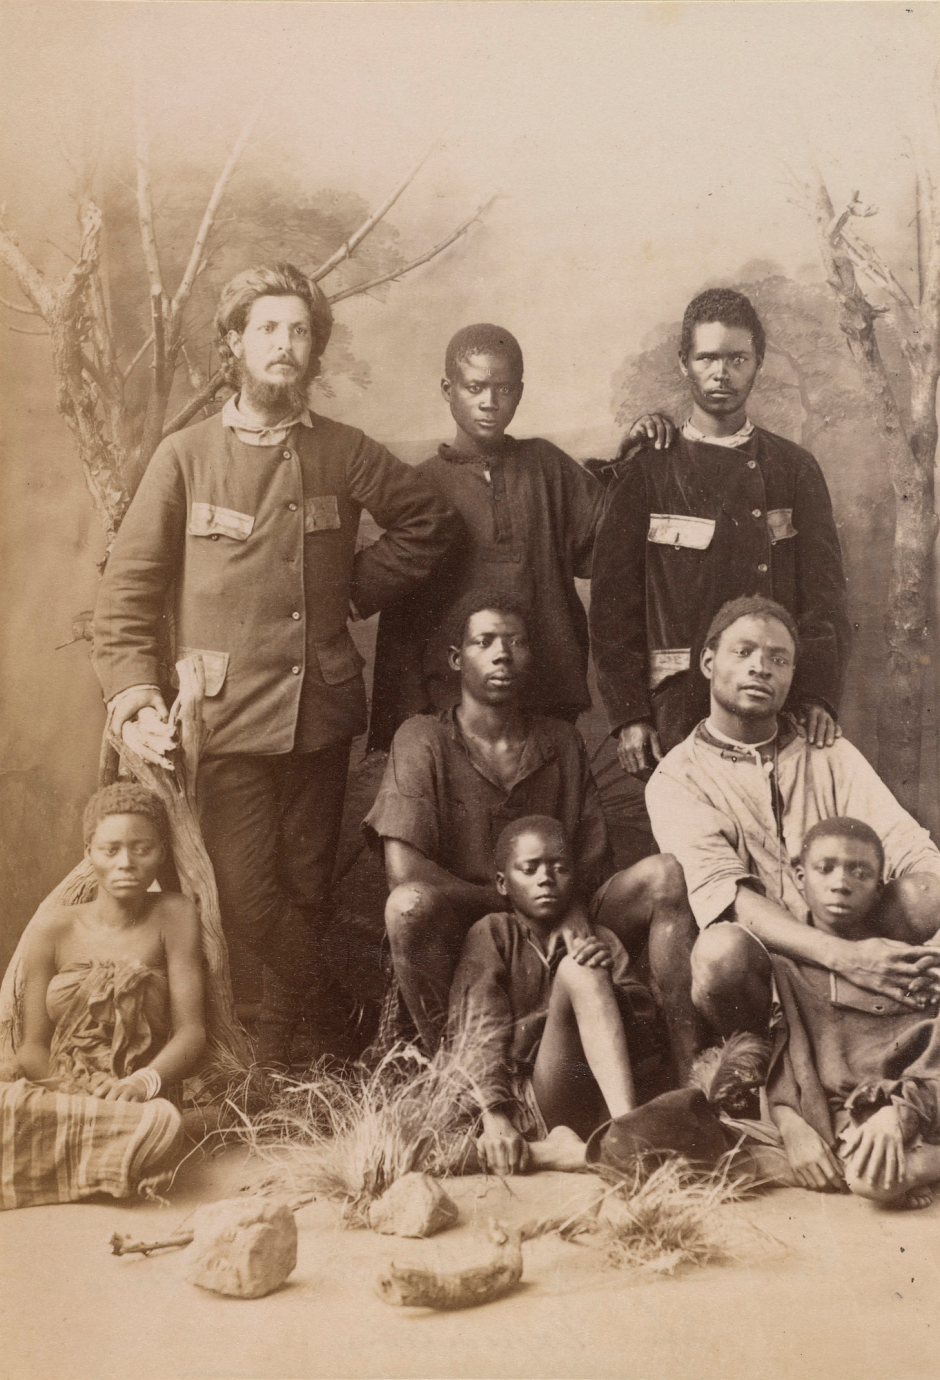 Alexandre de Serpa Pinto (standing, left) with the survivors of his expedition from São Paulo da Assunção de Loanda to Natal, c. 1879